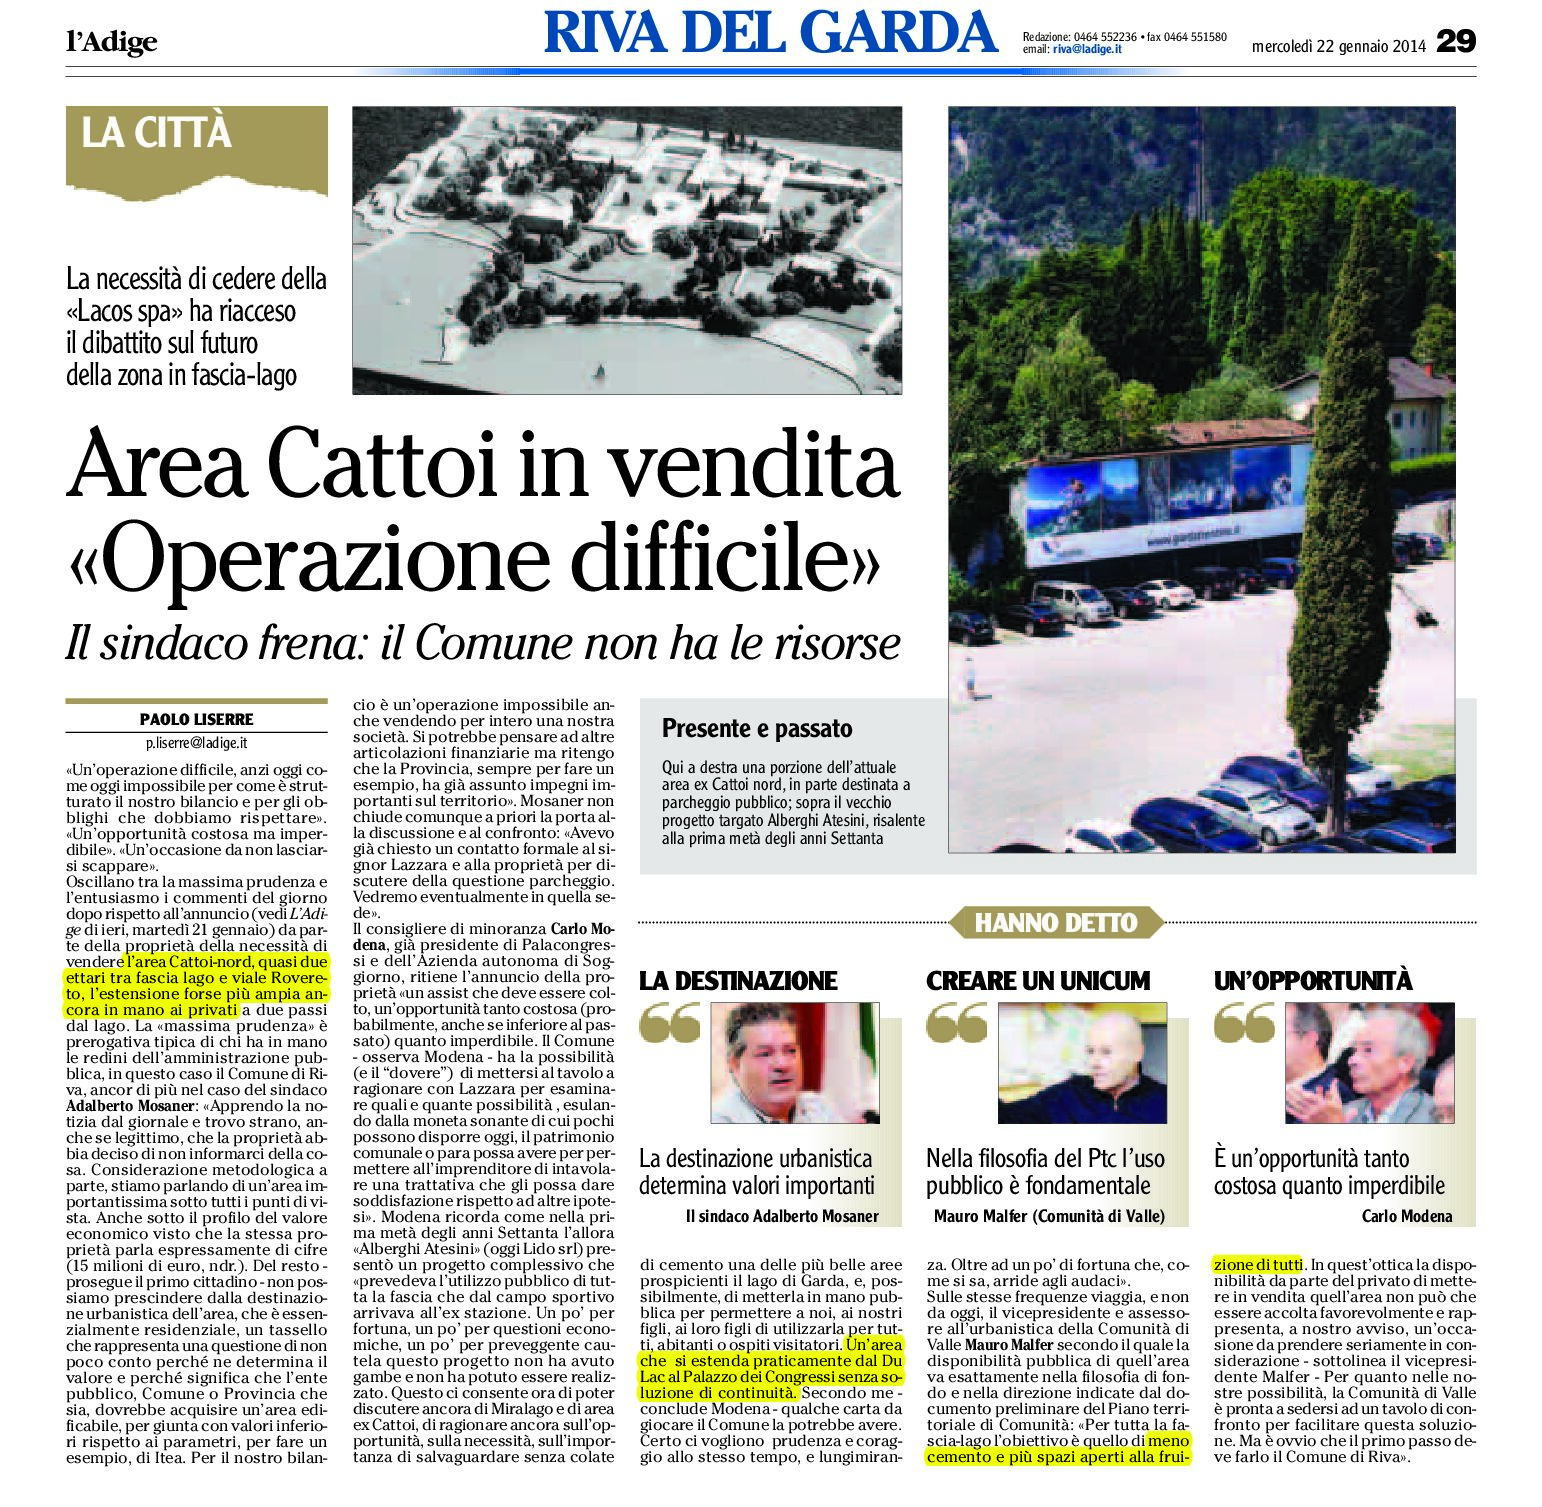 Riva: area Cattoi in vendita “operazione difficile”. Il sindaco frena